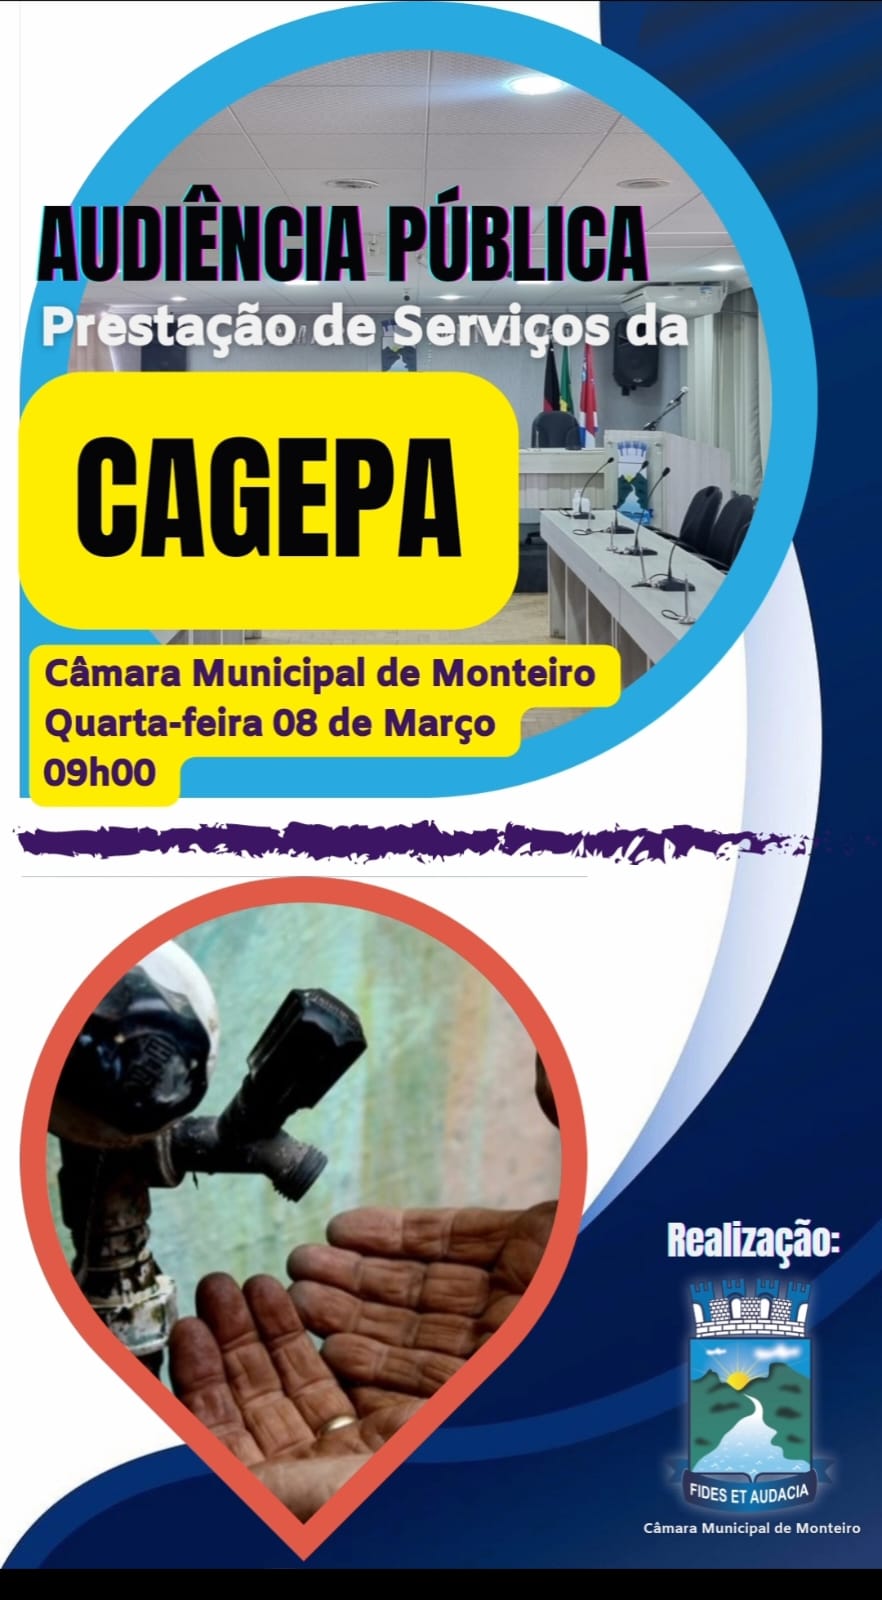 5.1 CAGEPA: Câmara de Monteiro realizará Audiência Pública na próxima quarta